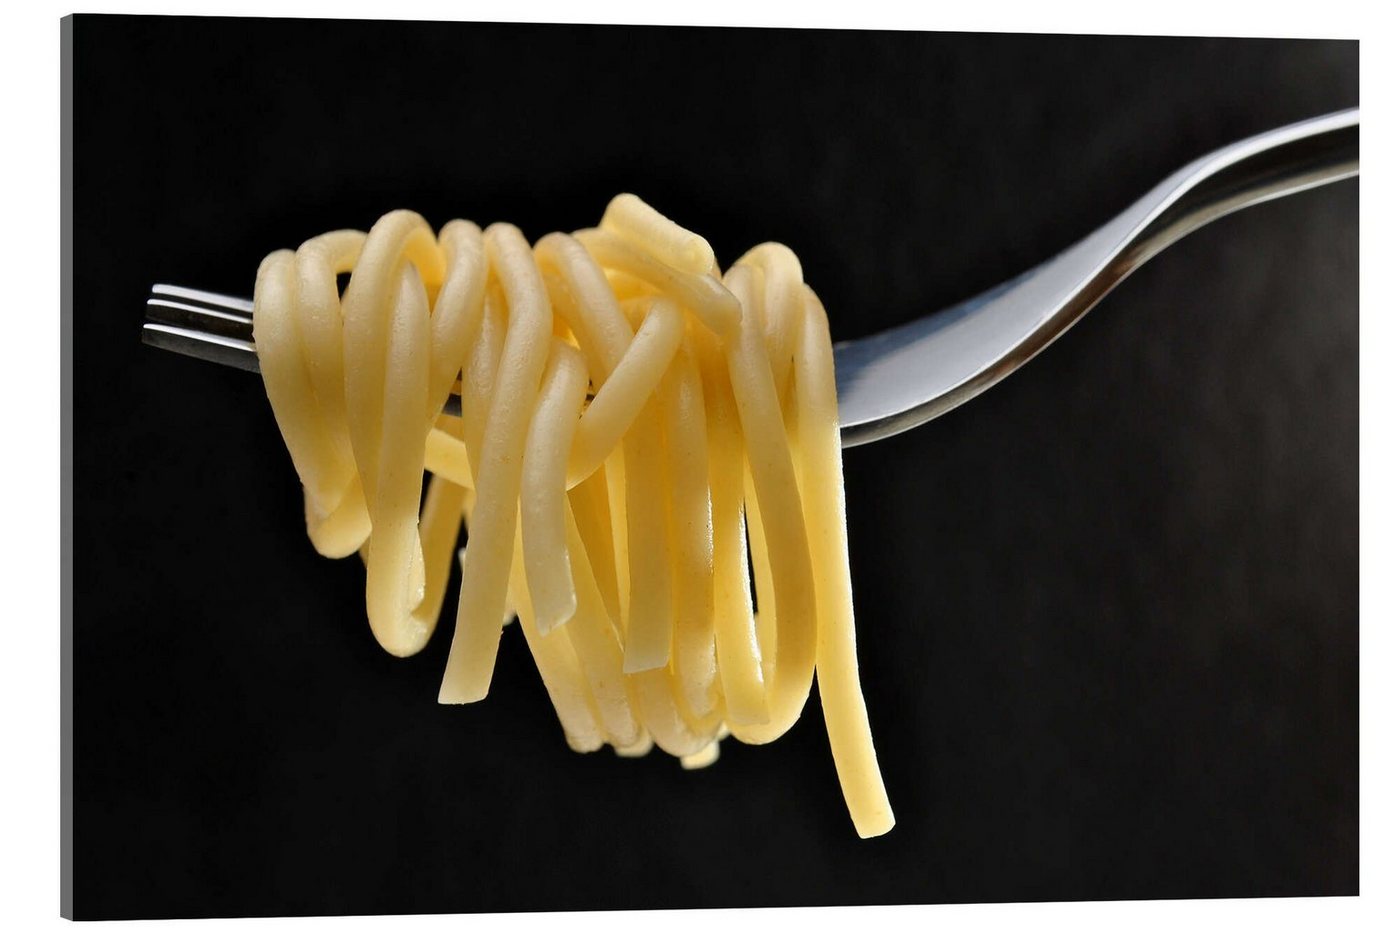 Posterlounge Acrylglasbild Editors Choice, Spaghetti auf einer Gabel, Fotografie von Posterlounge